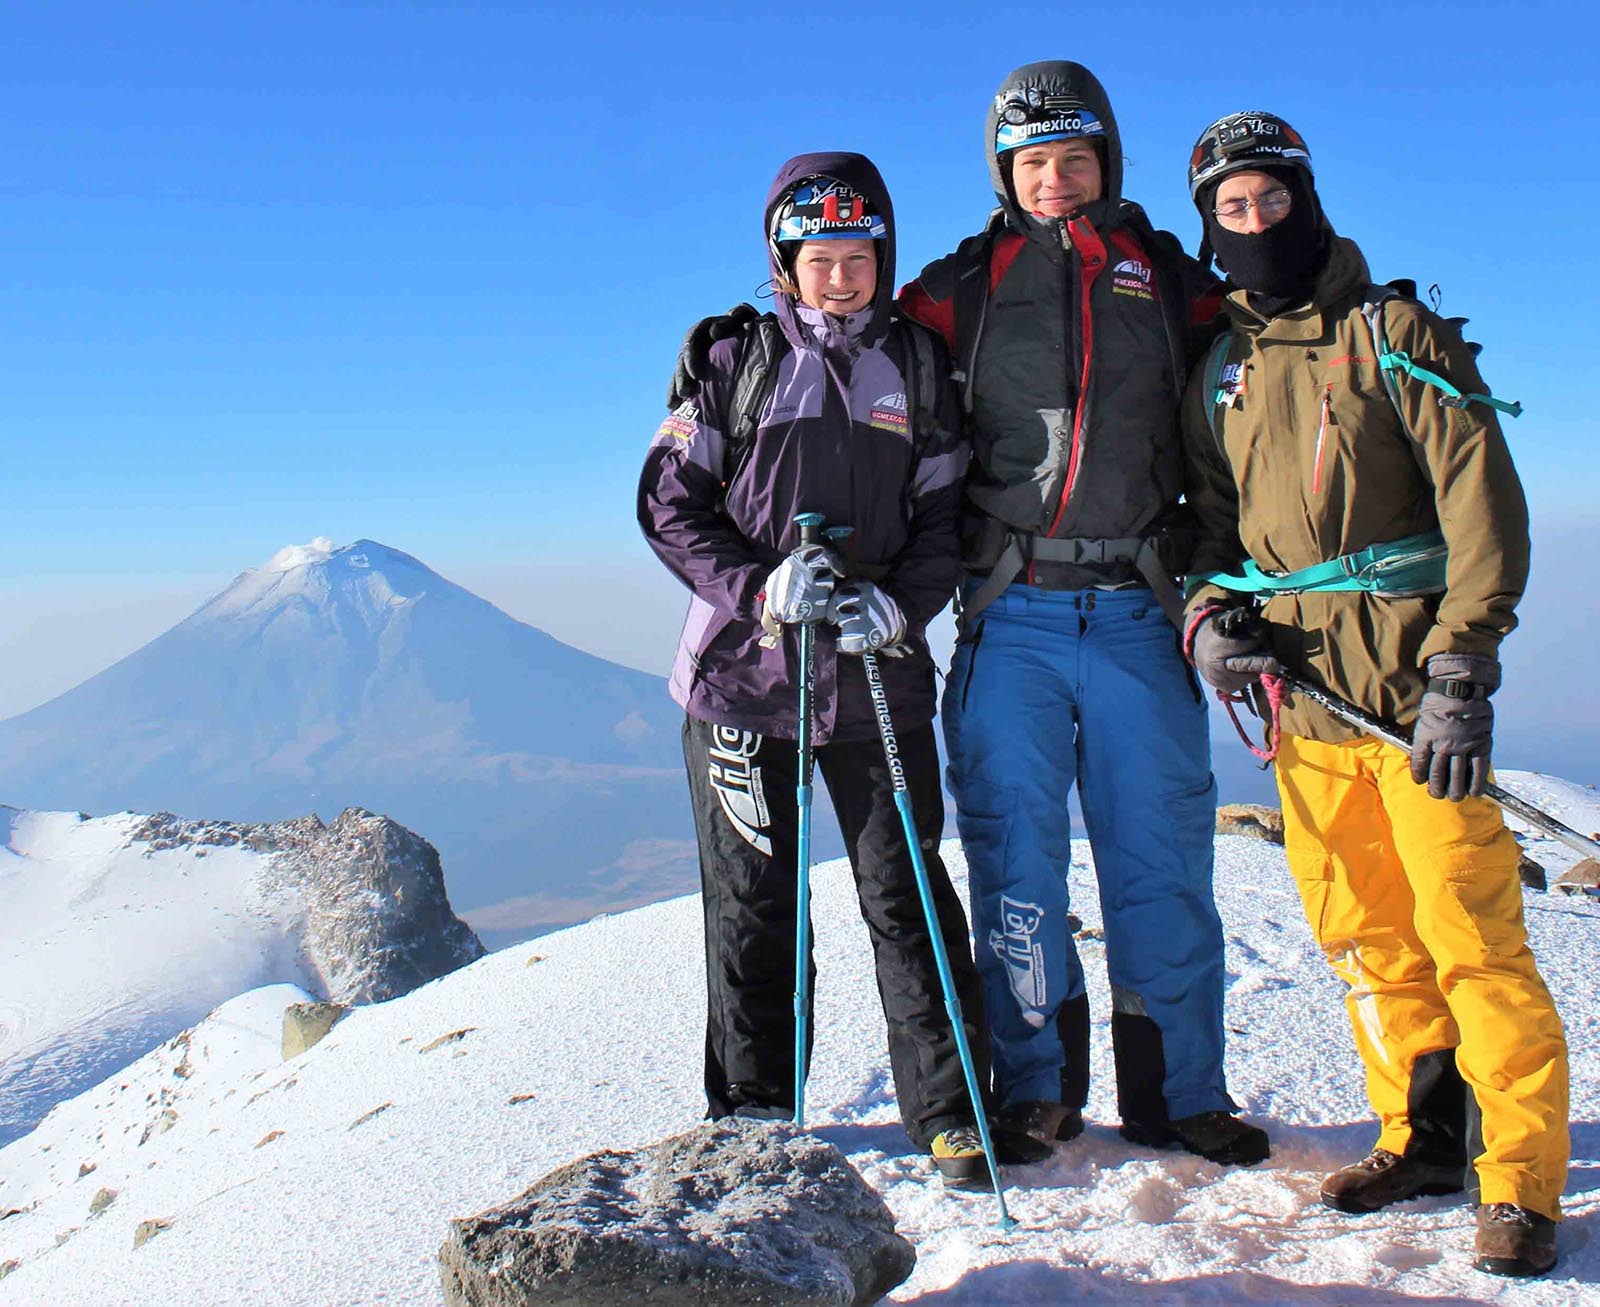 Iztaccihuatl hgmexico excursion alpinismo montañismo